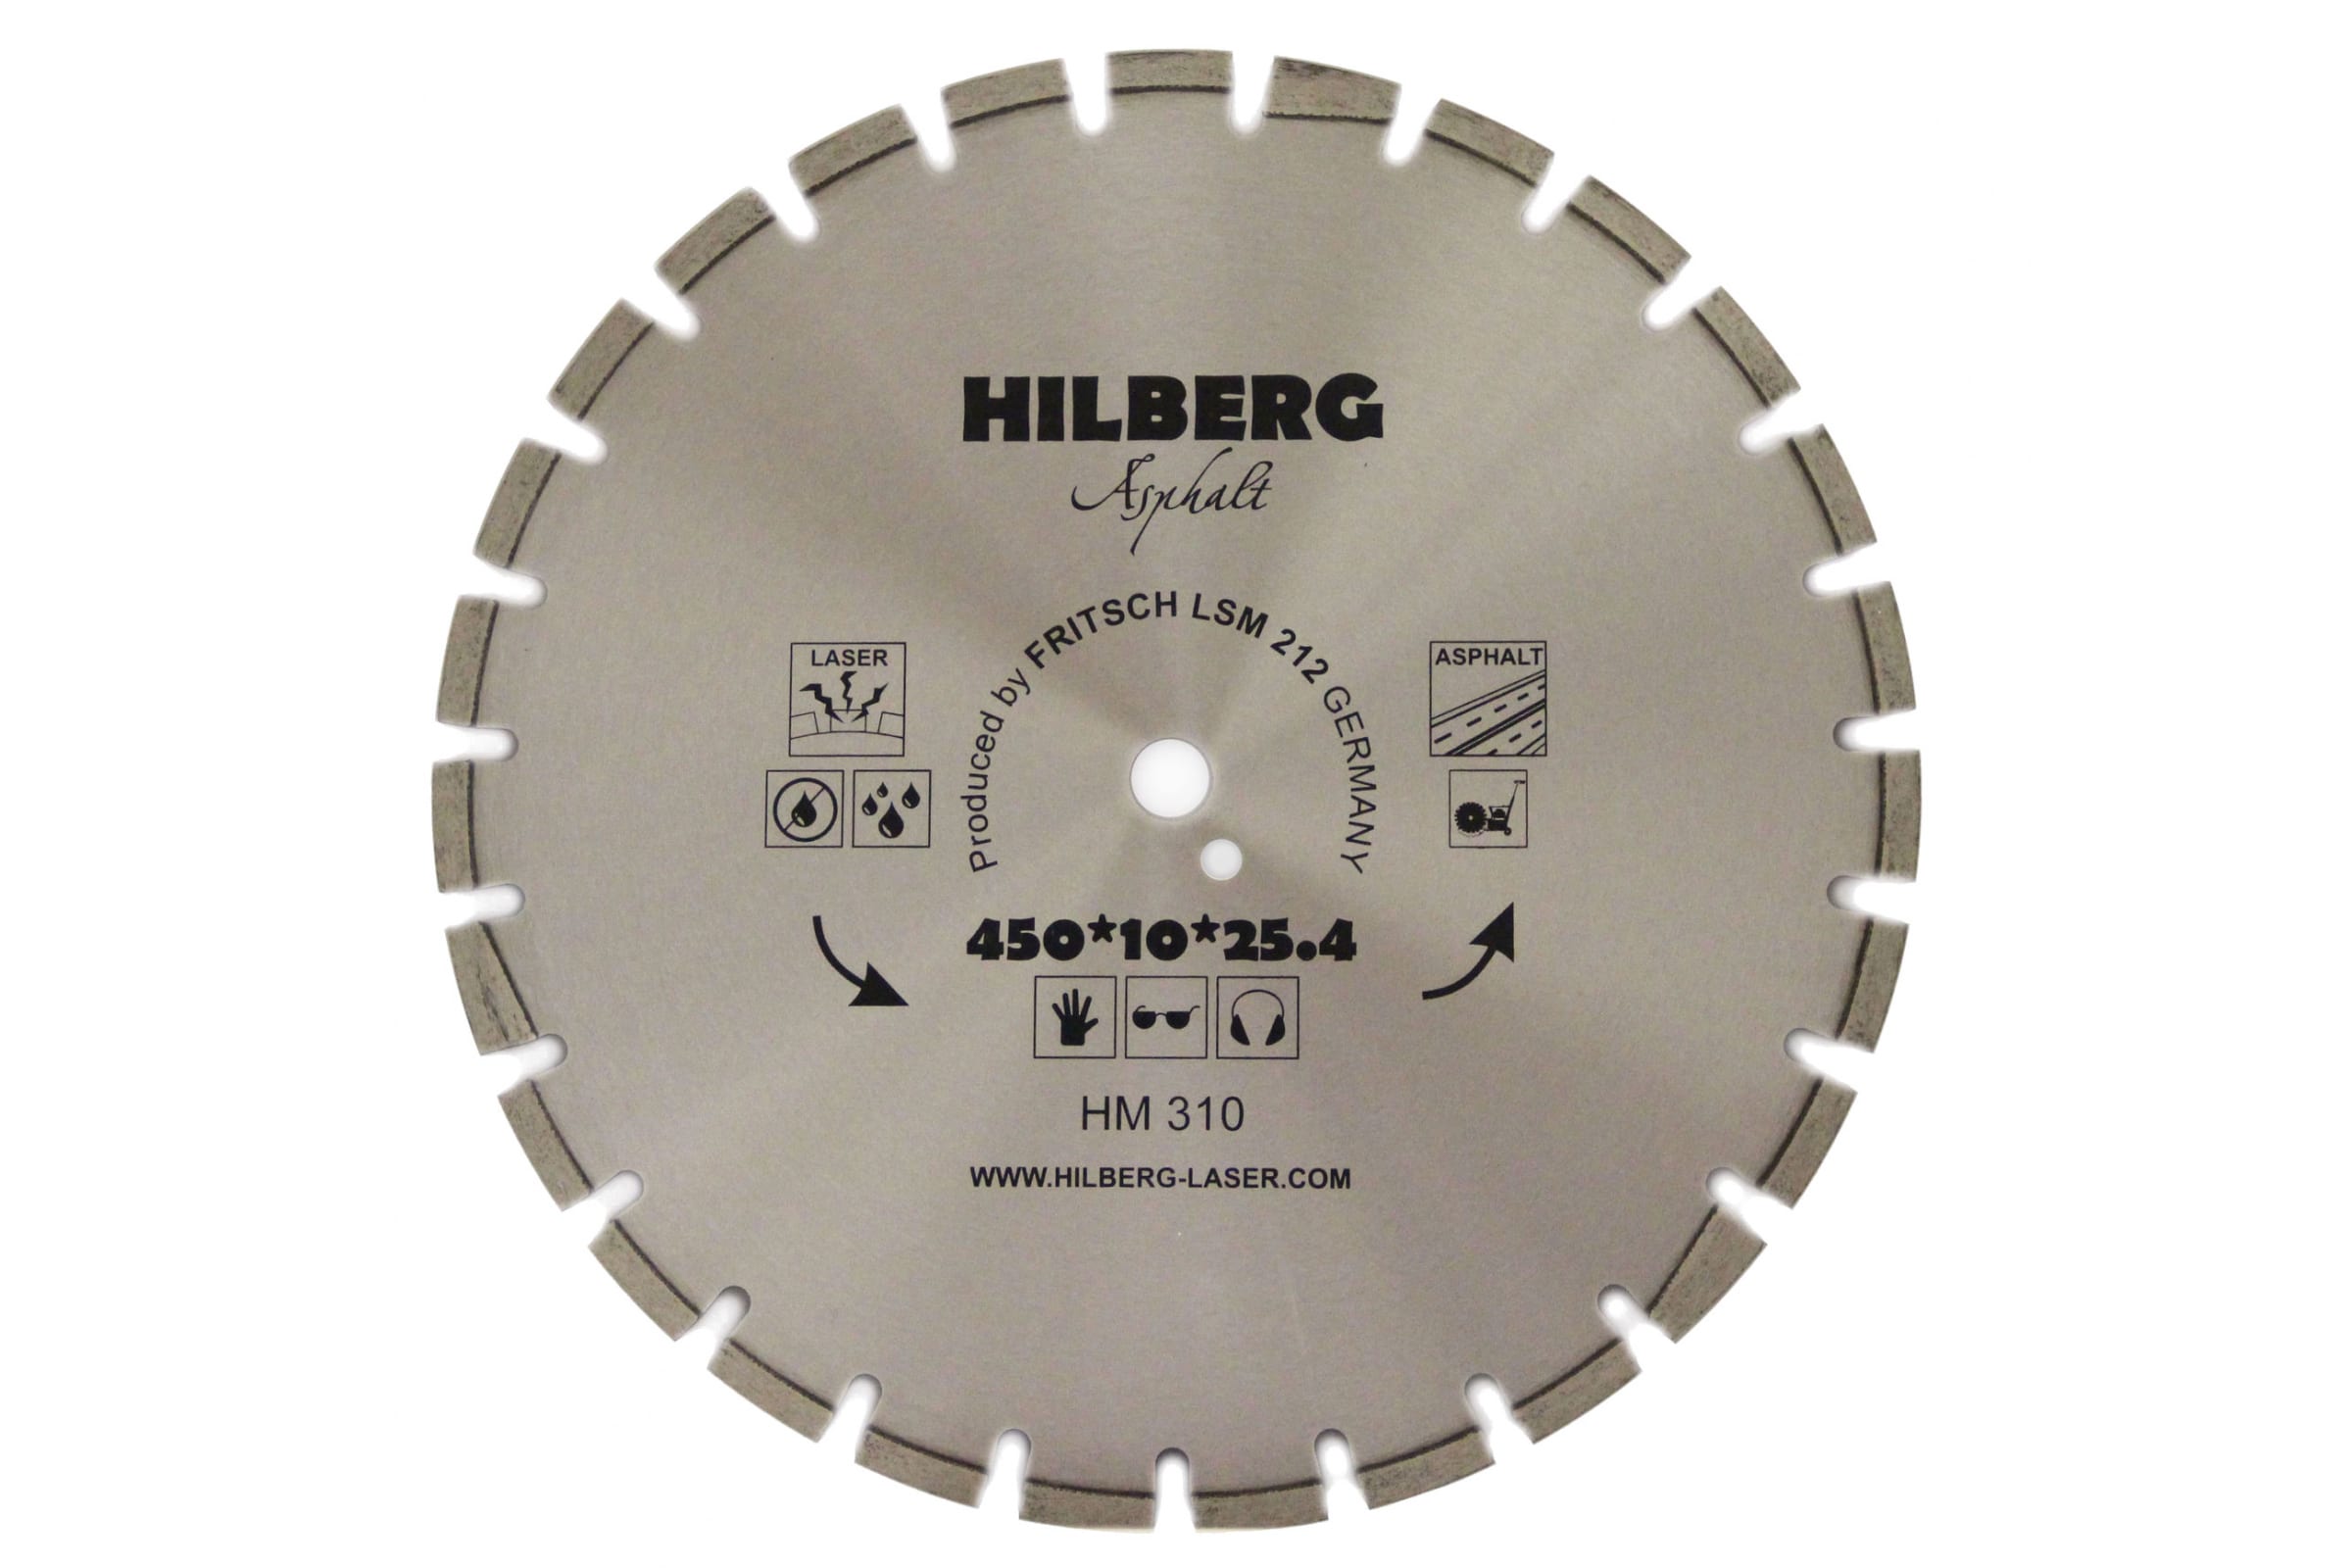 фото Hilberg диск алмазный отрезной 45025,412hard materials лазер асфальт hm310